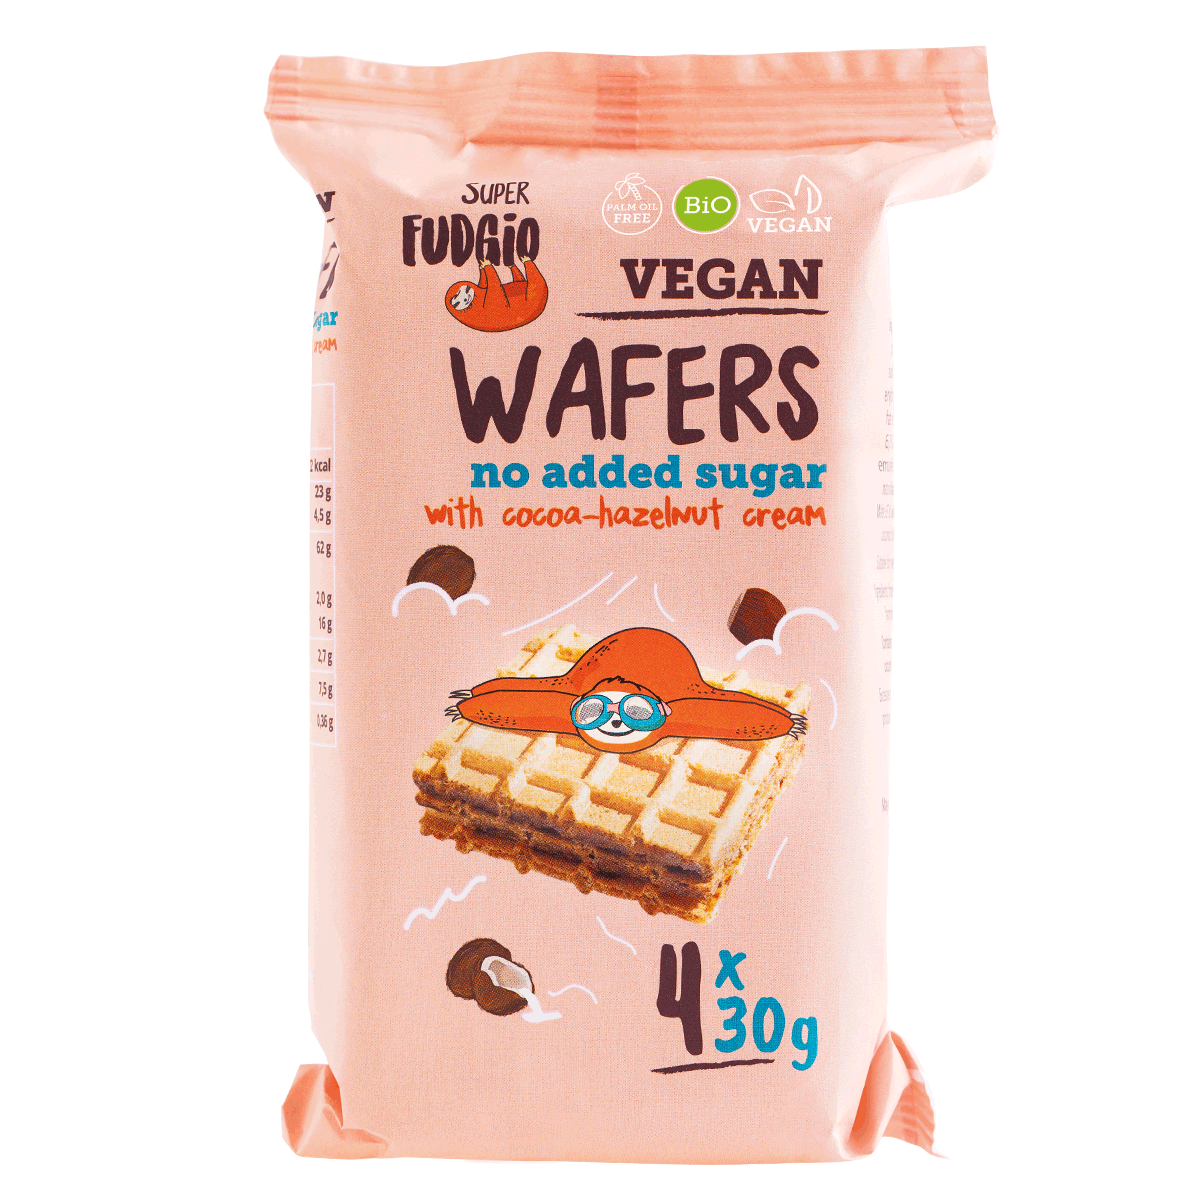 superfudgio-wafers-no-added-sugar-4x30g